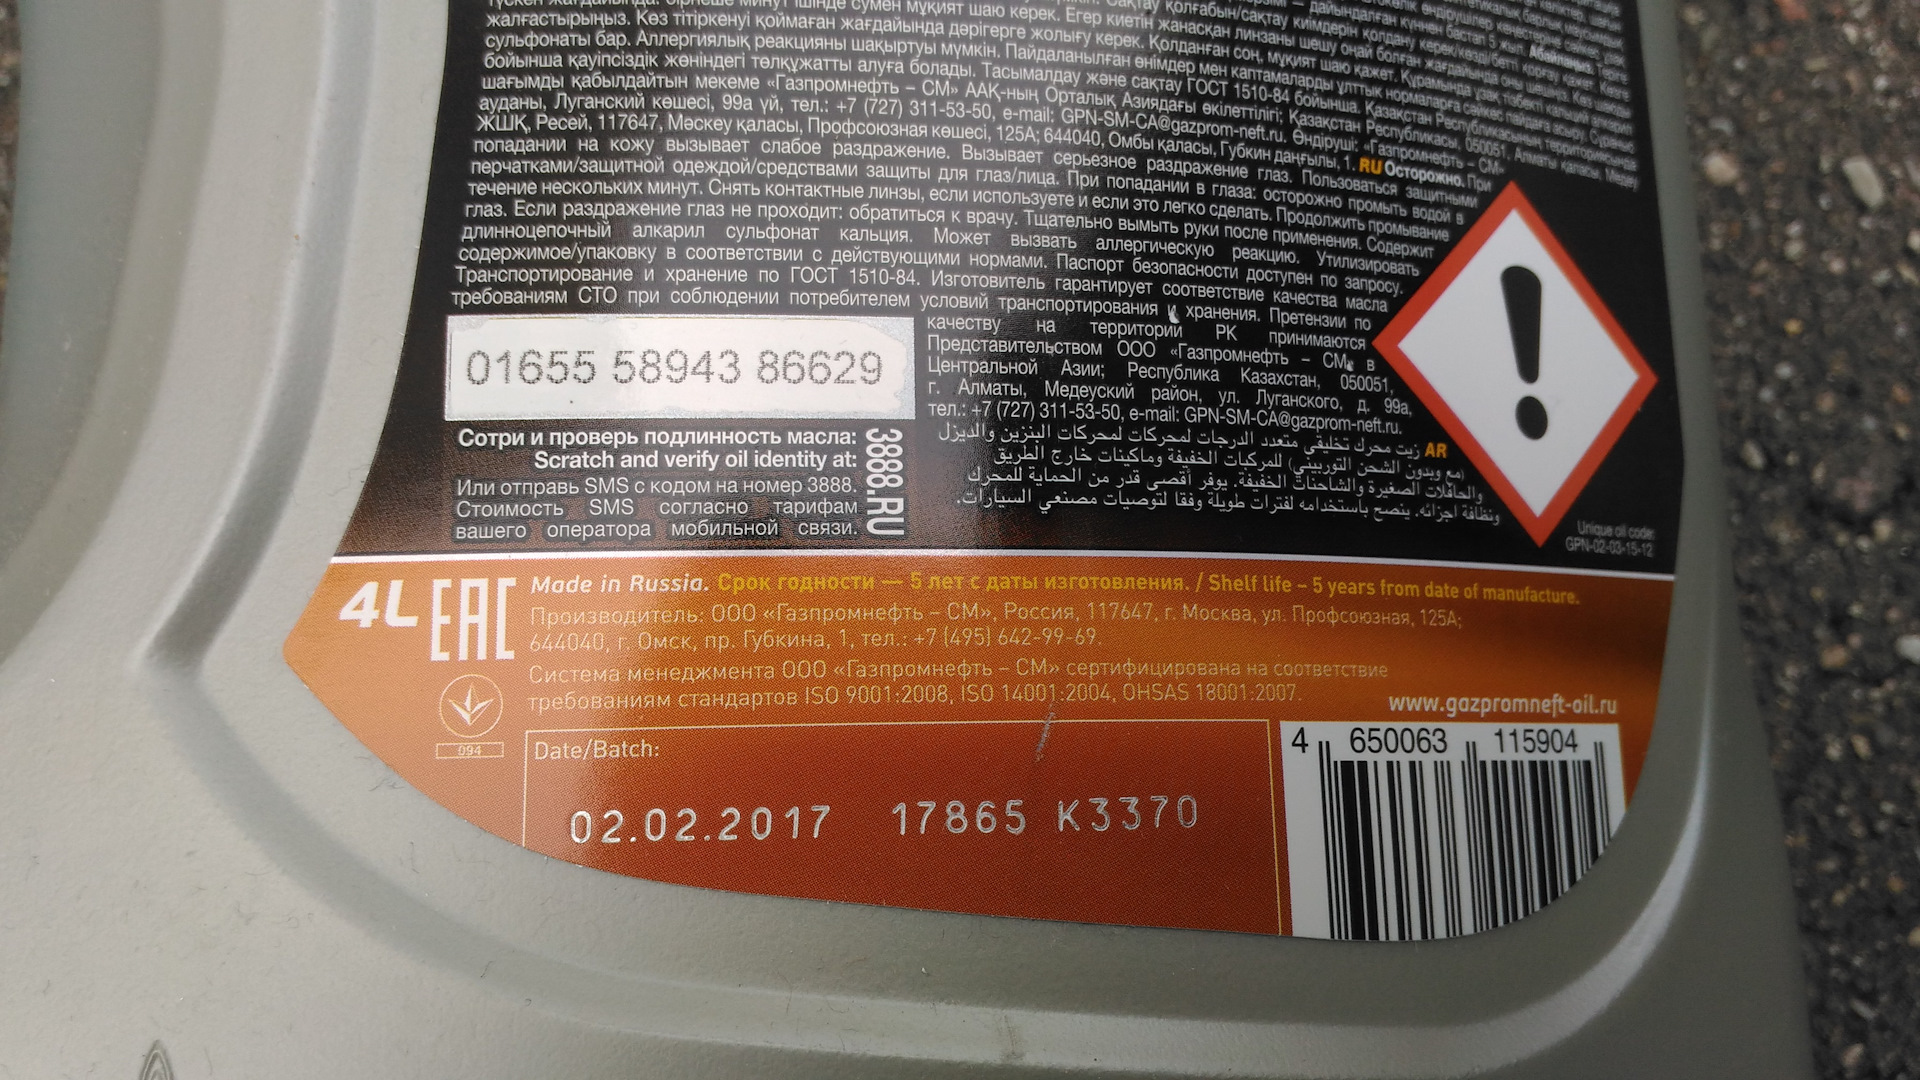 Проверить масло лукойл по коду. Verify масло. Как проверить масло Лукойл на подлинность. Проверка оригинальности масла Газпромнефть 1 литр.